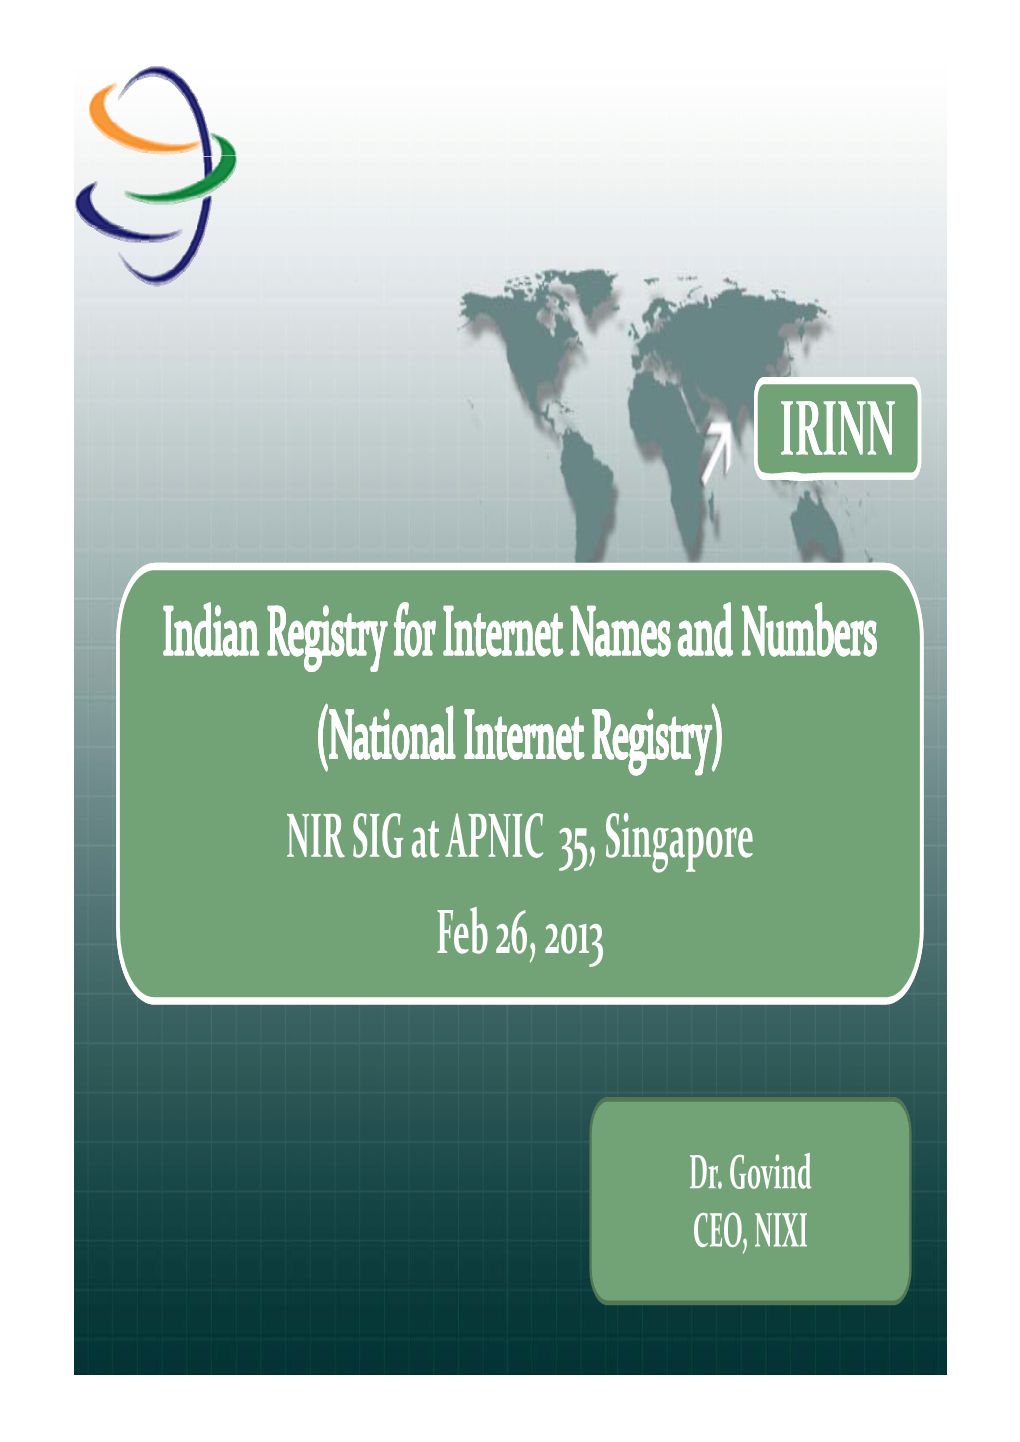 NIR SIG at APNIC 35, Singapore Feb 26, 2013